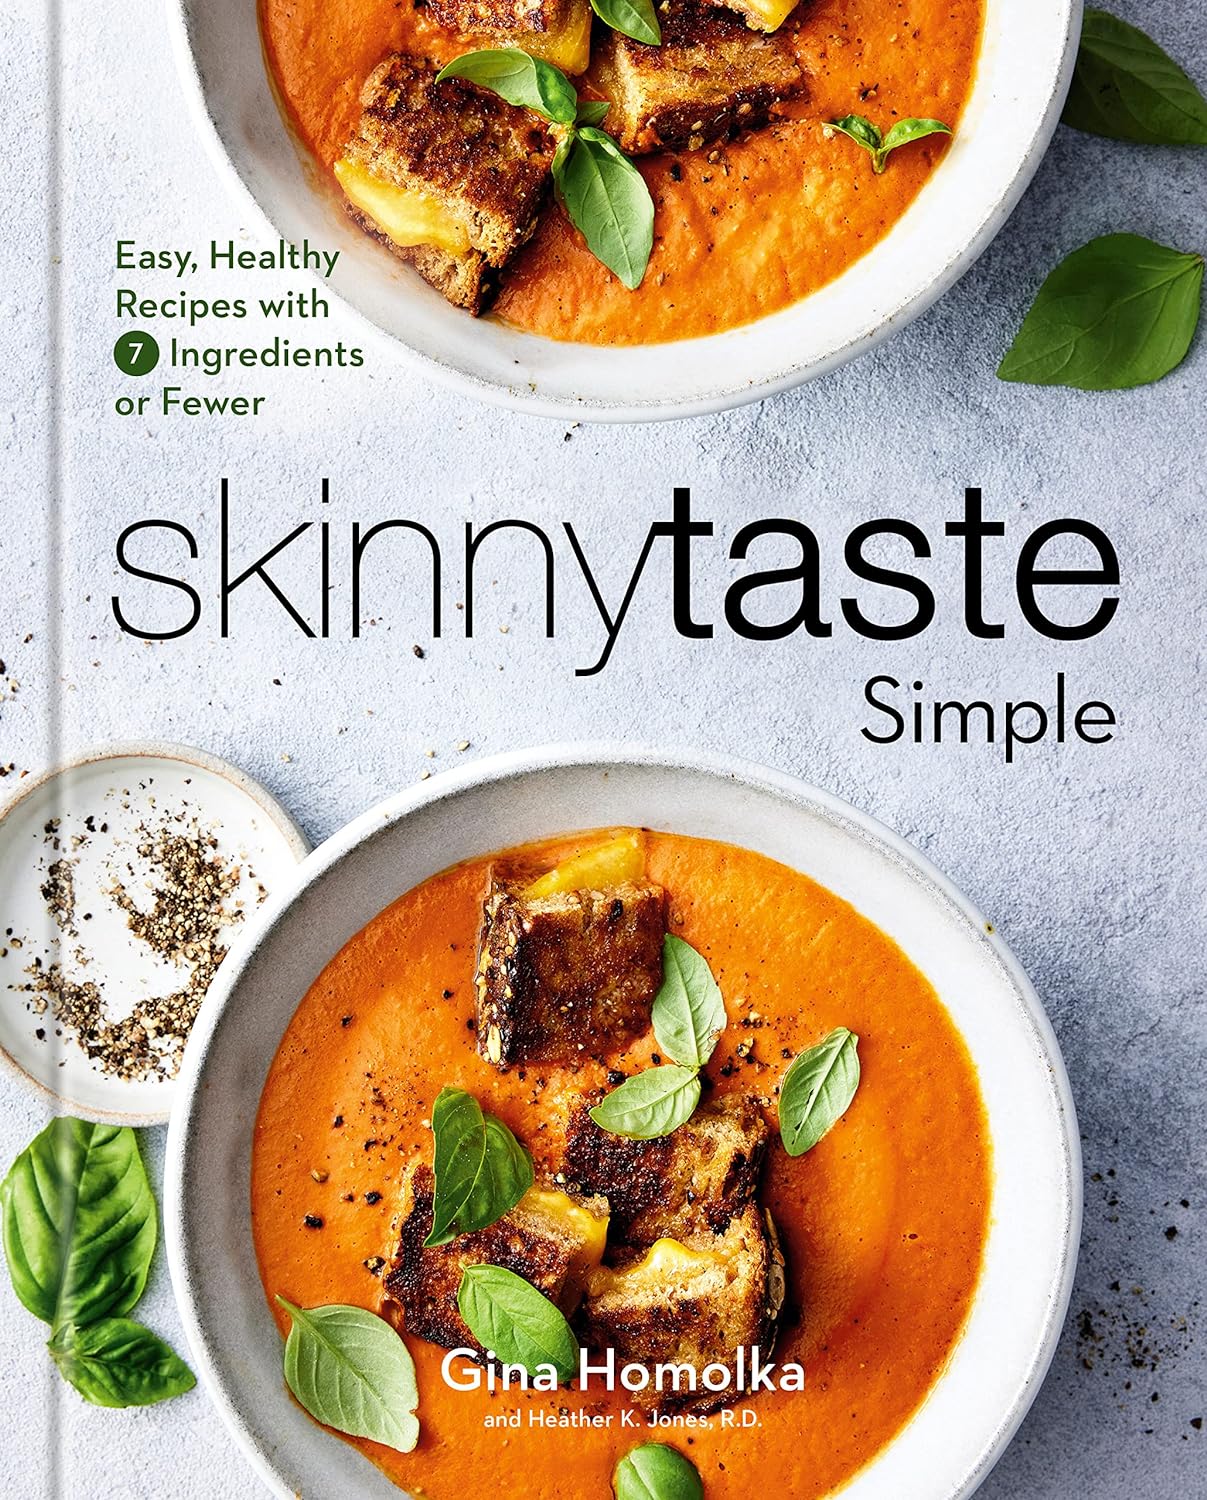 Skinnytaste Simple: Einfache und gesunde Rezepte mit 7 Zutaten oder weniger: Ein Hardcover-Kochbuch